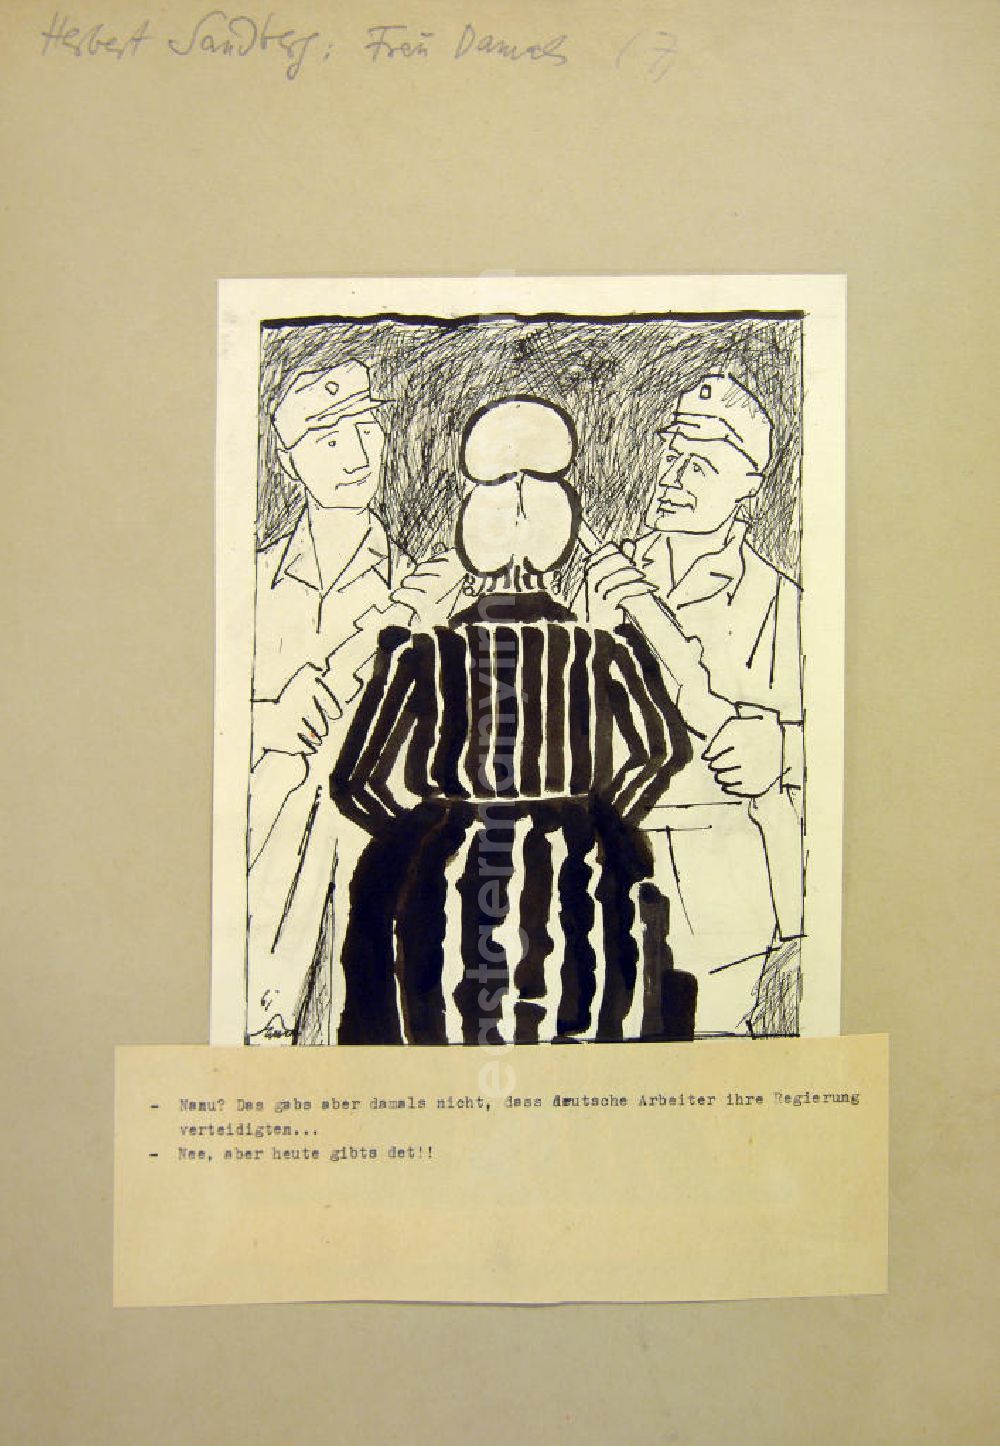 GDR picture archive: Berlin - Zeichnung von Herbert Sandberg Frau Damals (7.) aus dem Jahr 1961, 17,0x20,